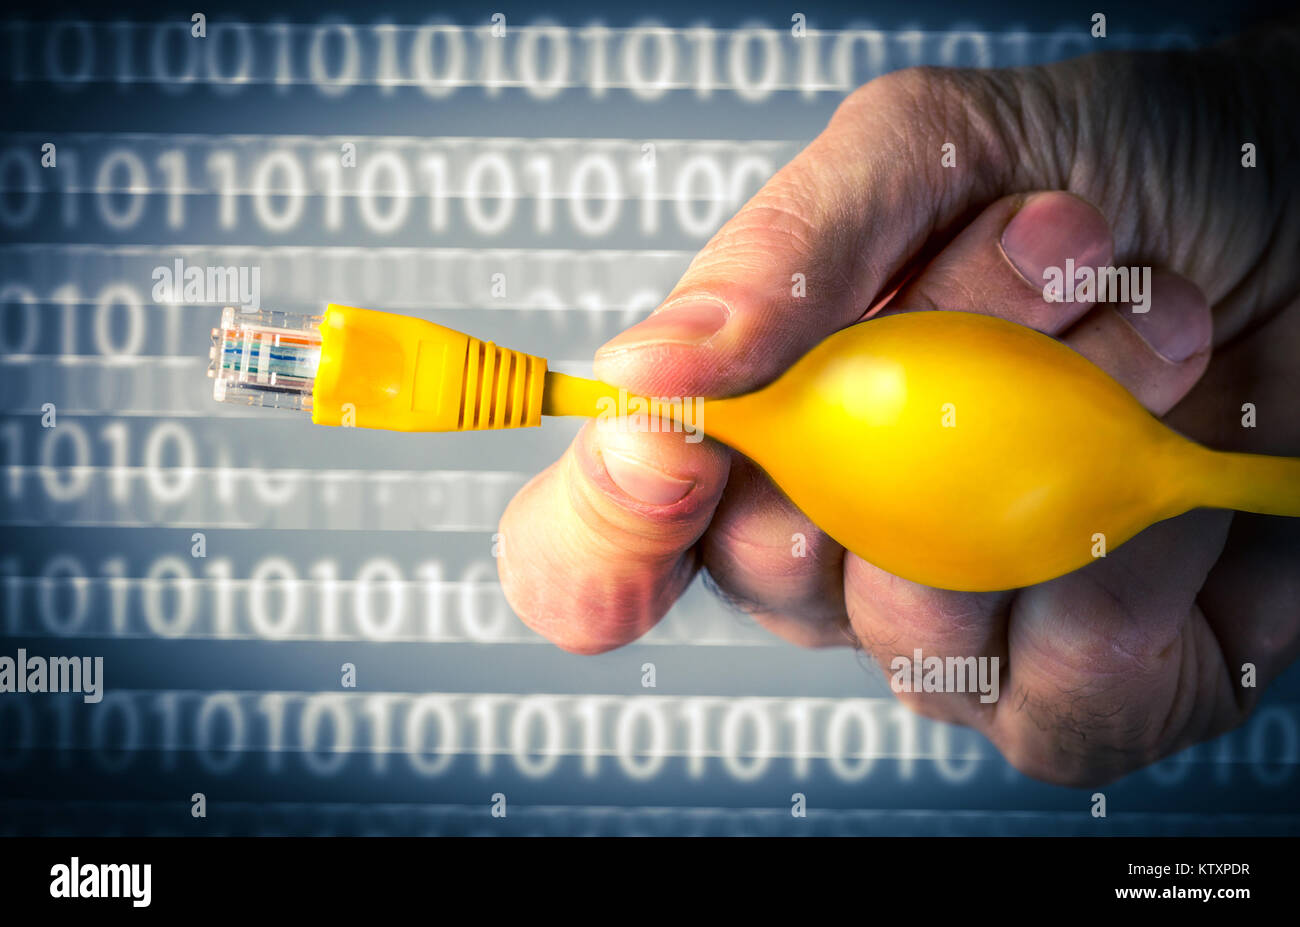 La neutralité du Net concept image d'un homme le pincement d'un câble Ethernet afin de restreindre l'accès à internet Banque D'Images